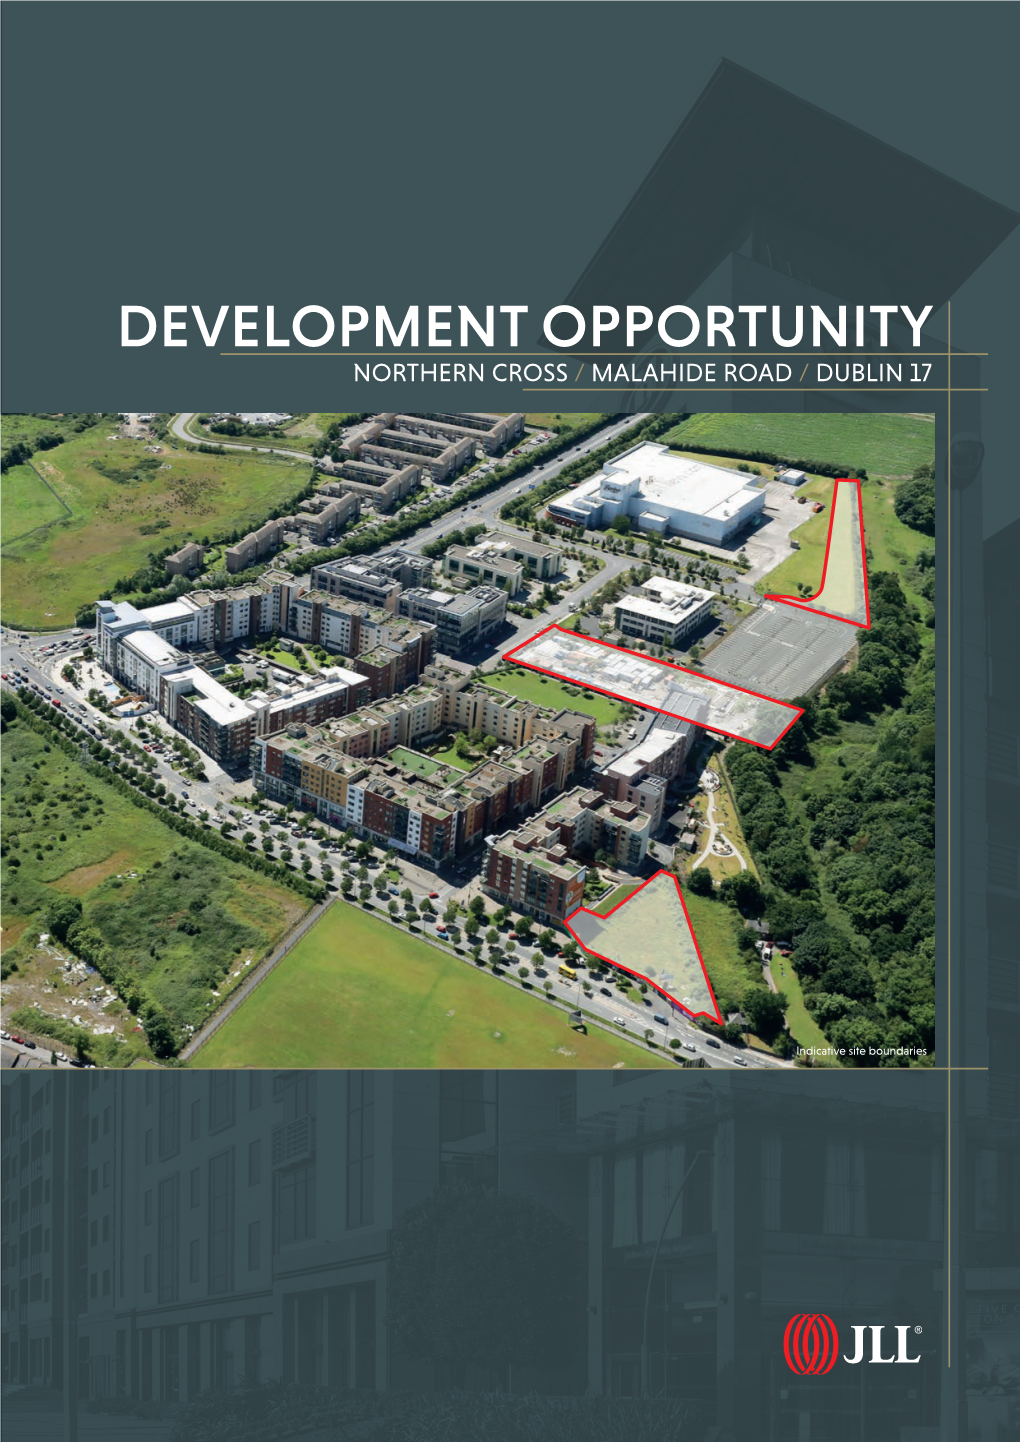 Development Opportunity Northern Cross / Malahide Road / Dublin 17